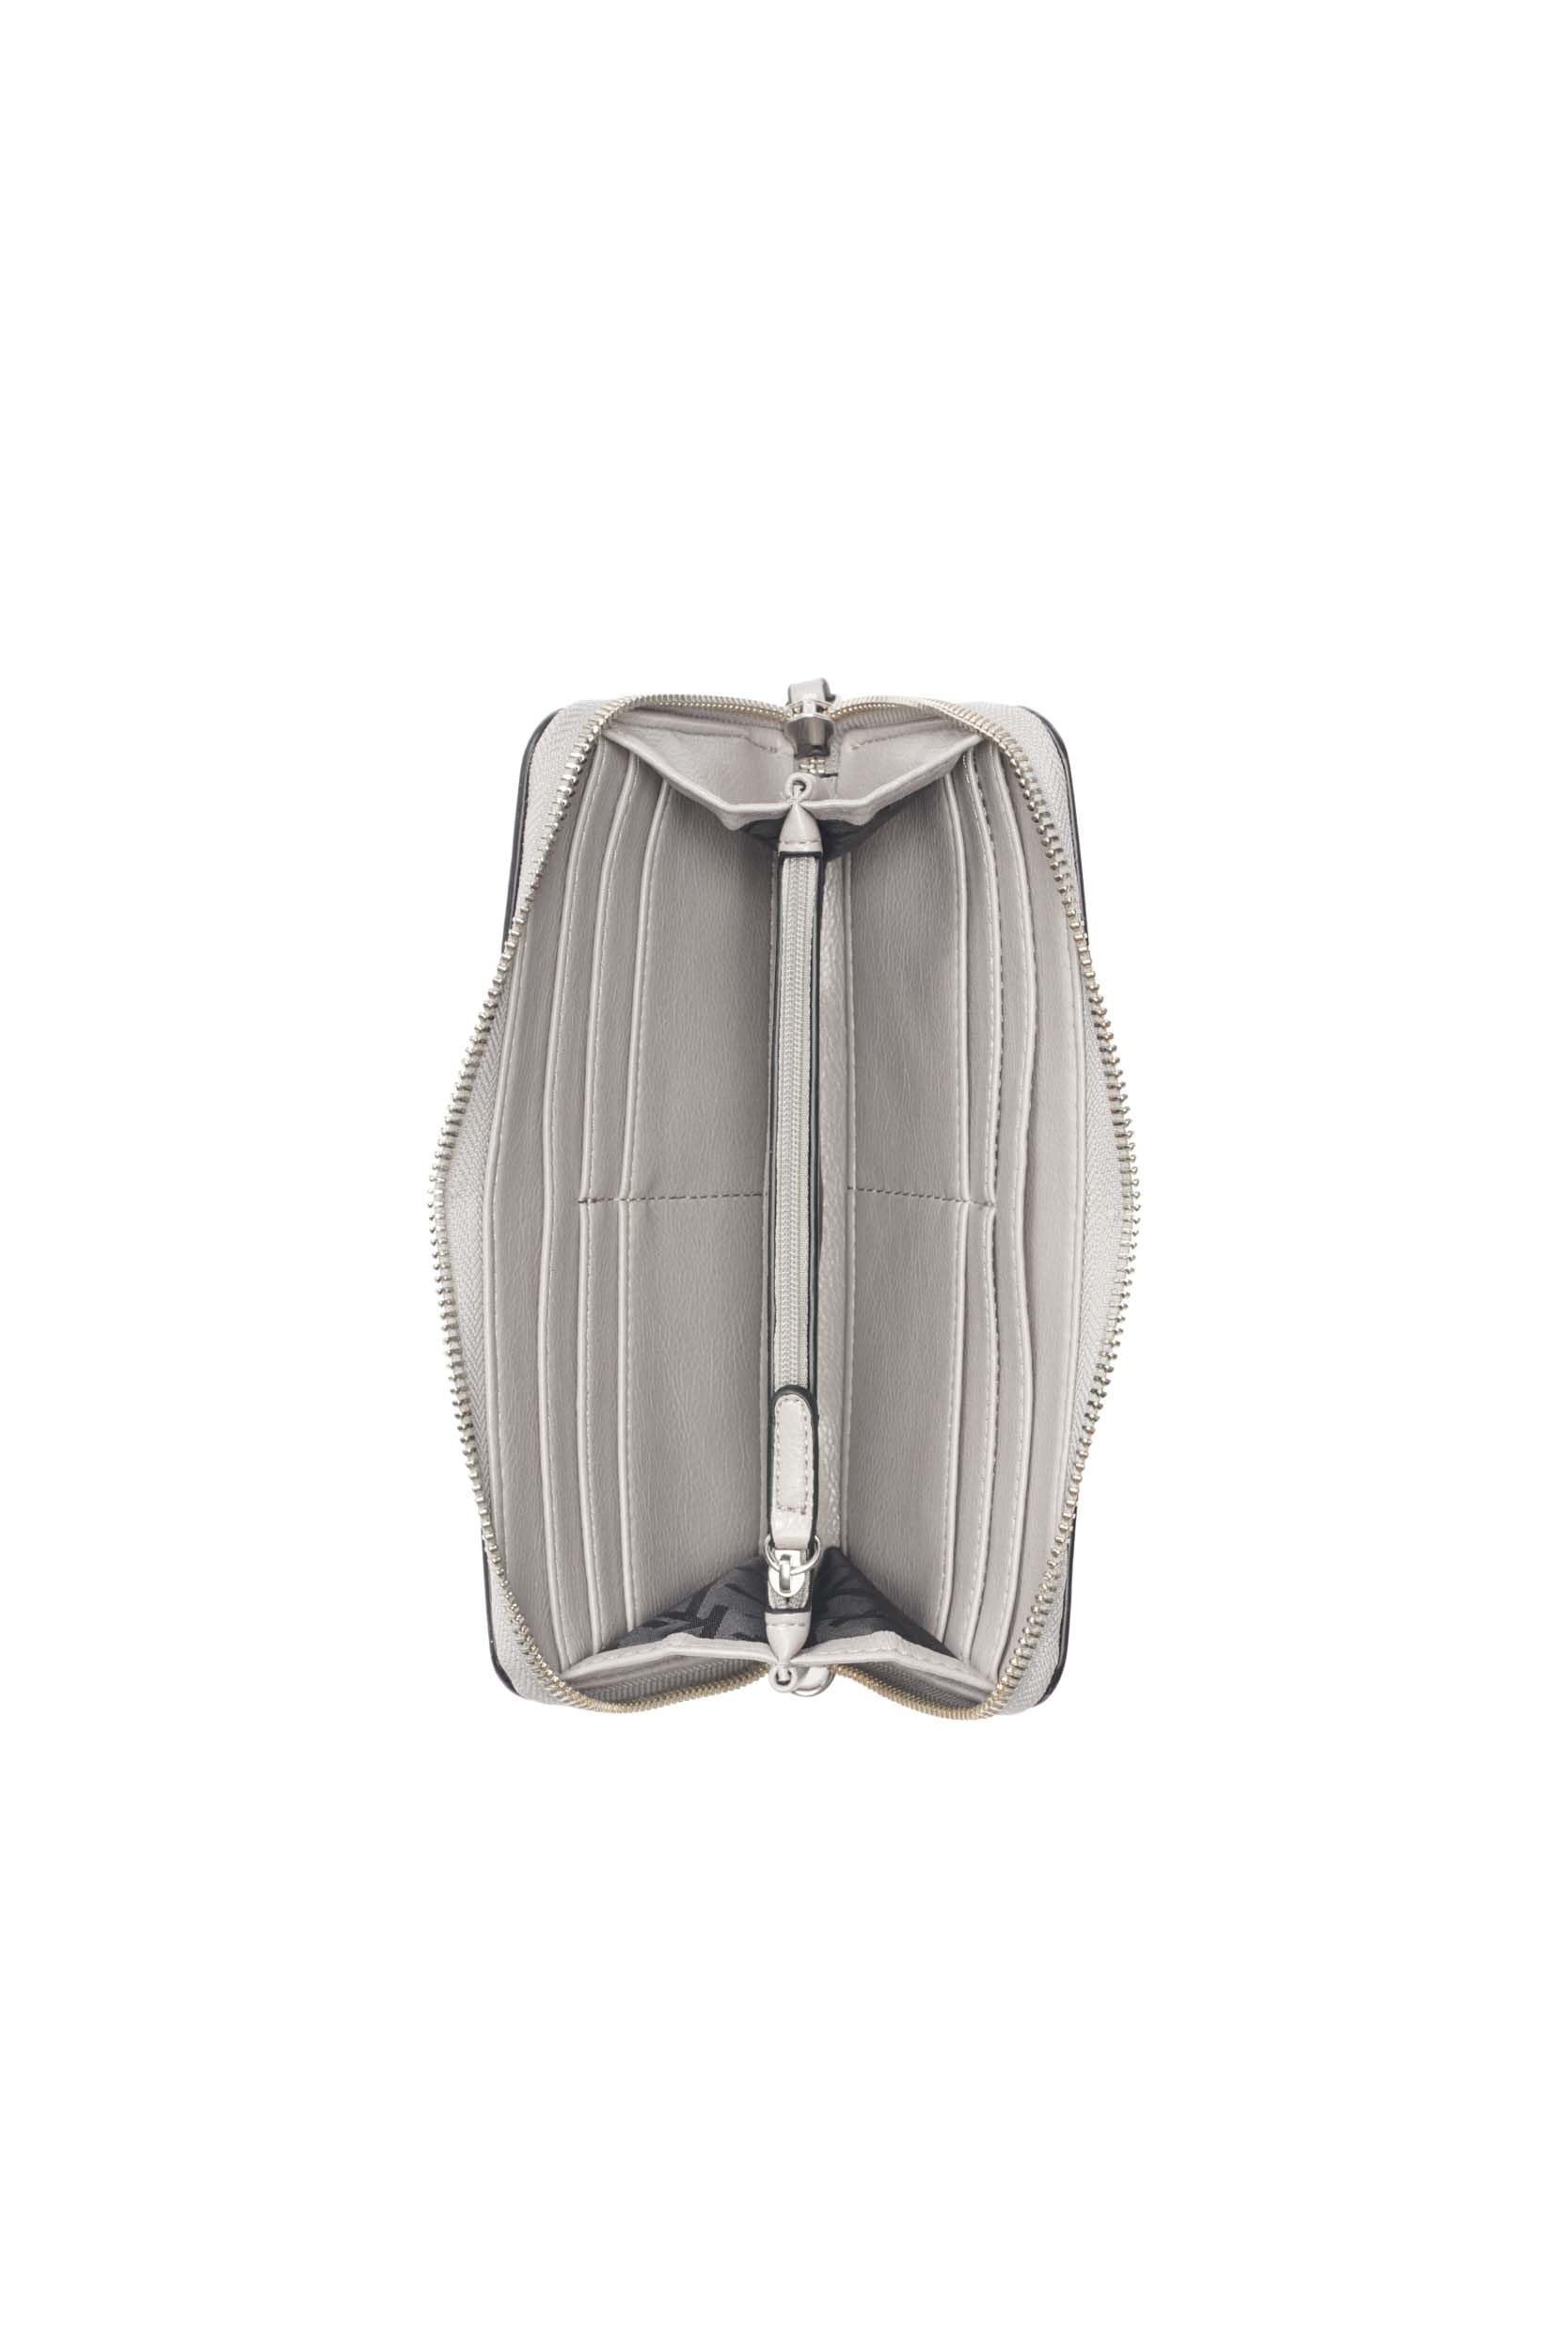 Calvin Klein Key Item Saffiano Continental Zip Around Wallet with Wristlet Strap